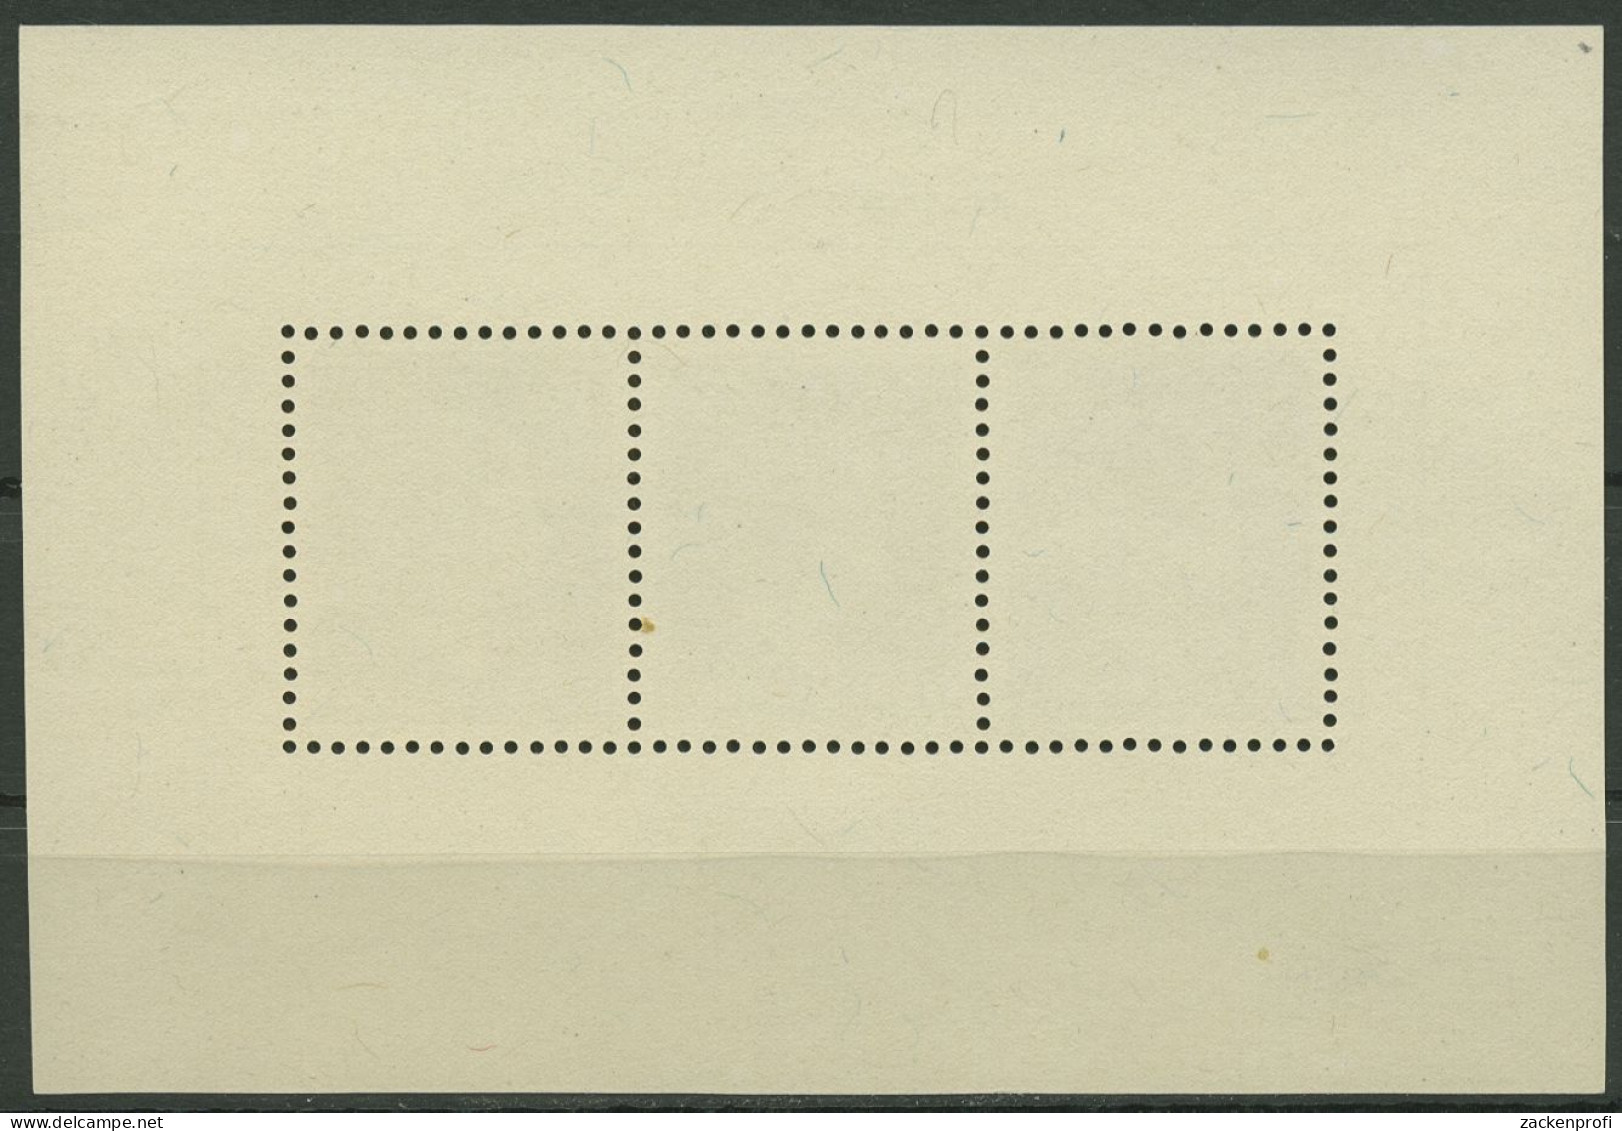 Luxemburg 1949 Herzogin Charlotte Block 7, Rückseite Fehler, Postfrisch (C95367) - Blocchi & Foglietti